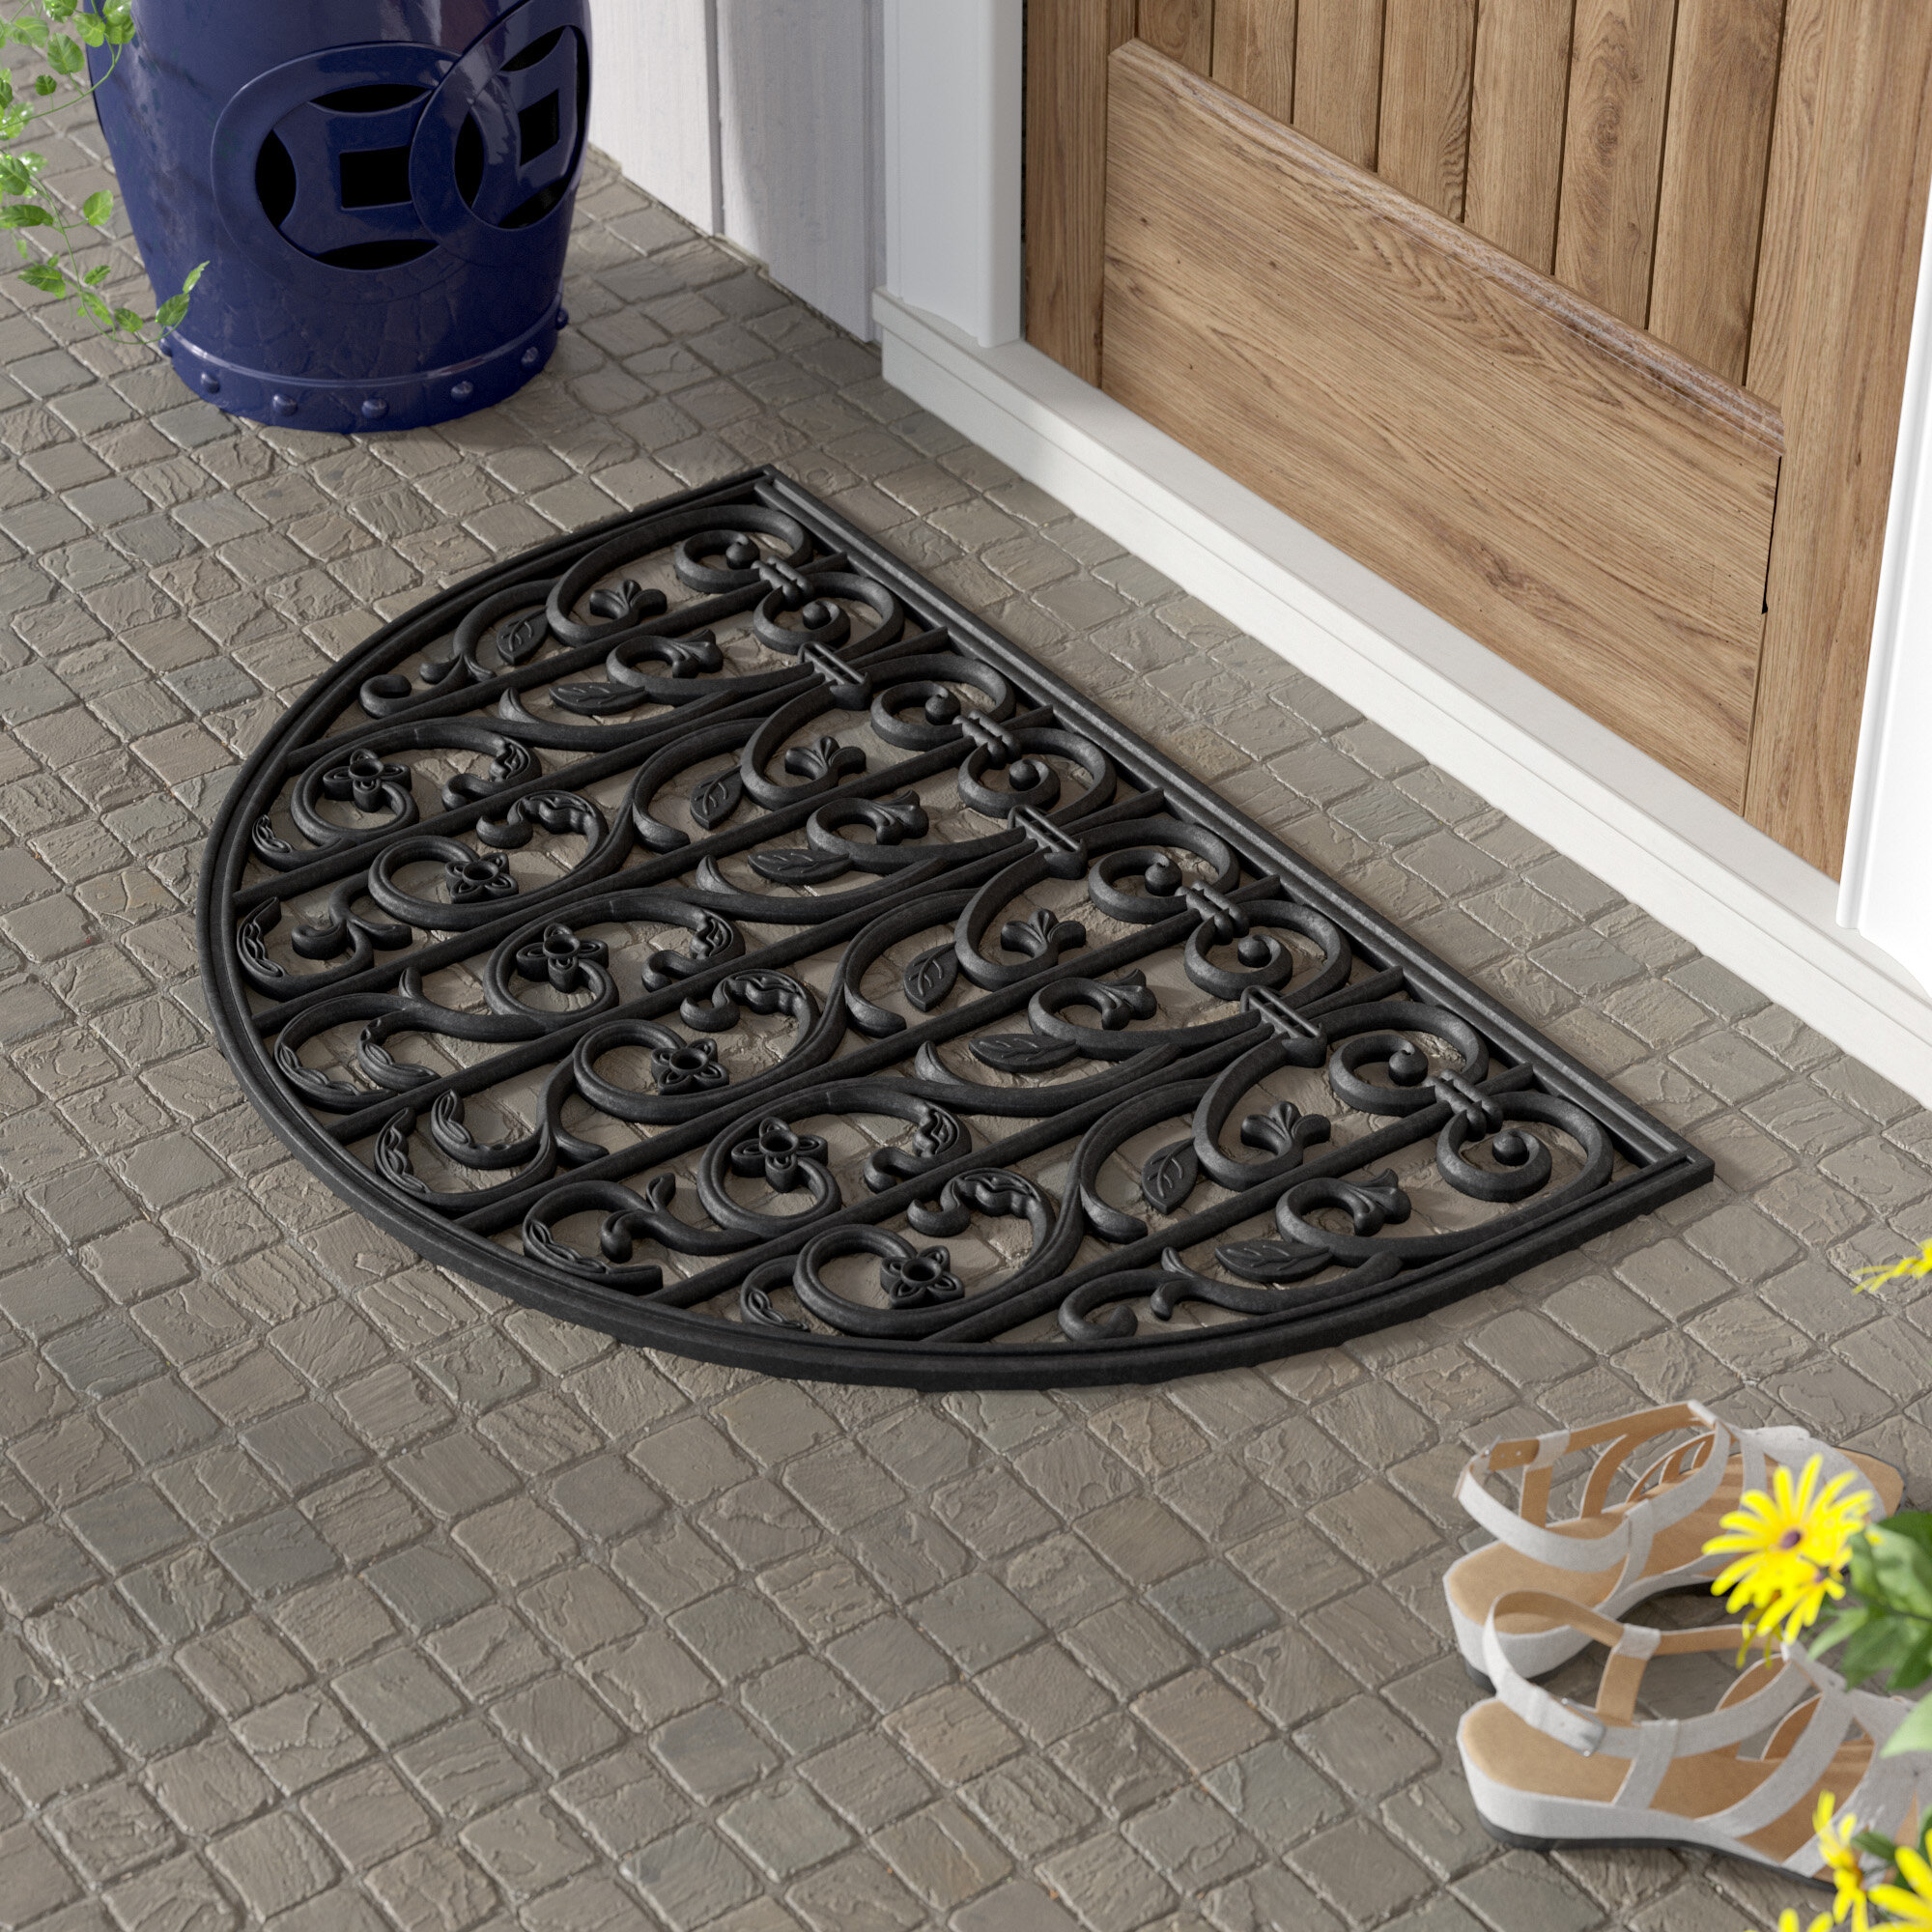 Abert Non-Slip Outdoor Doormat  Door mat, Outdoor door mat, Large door mats